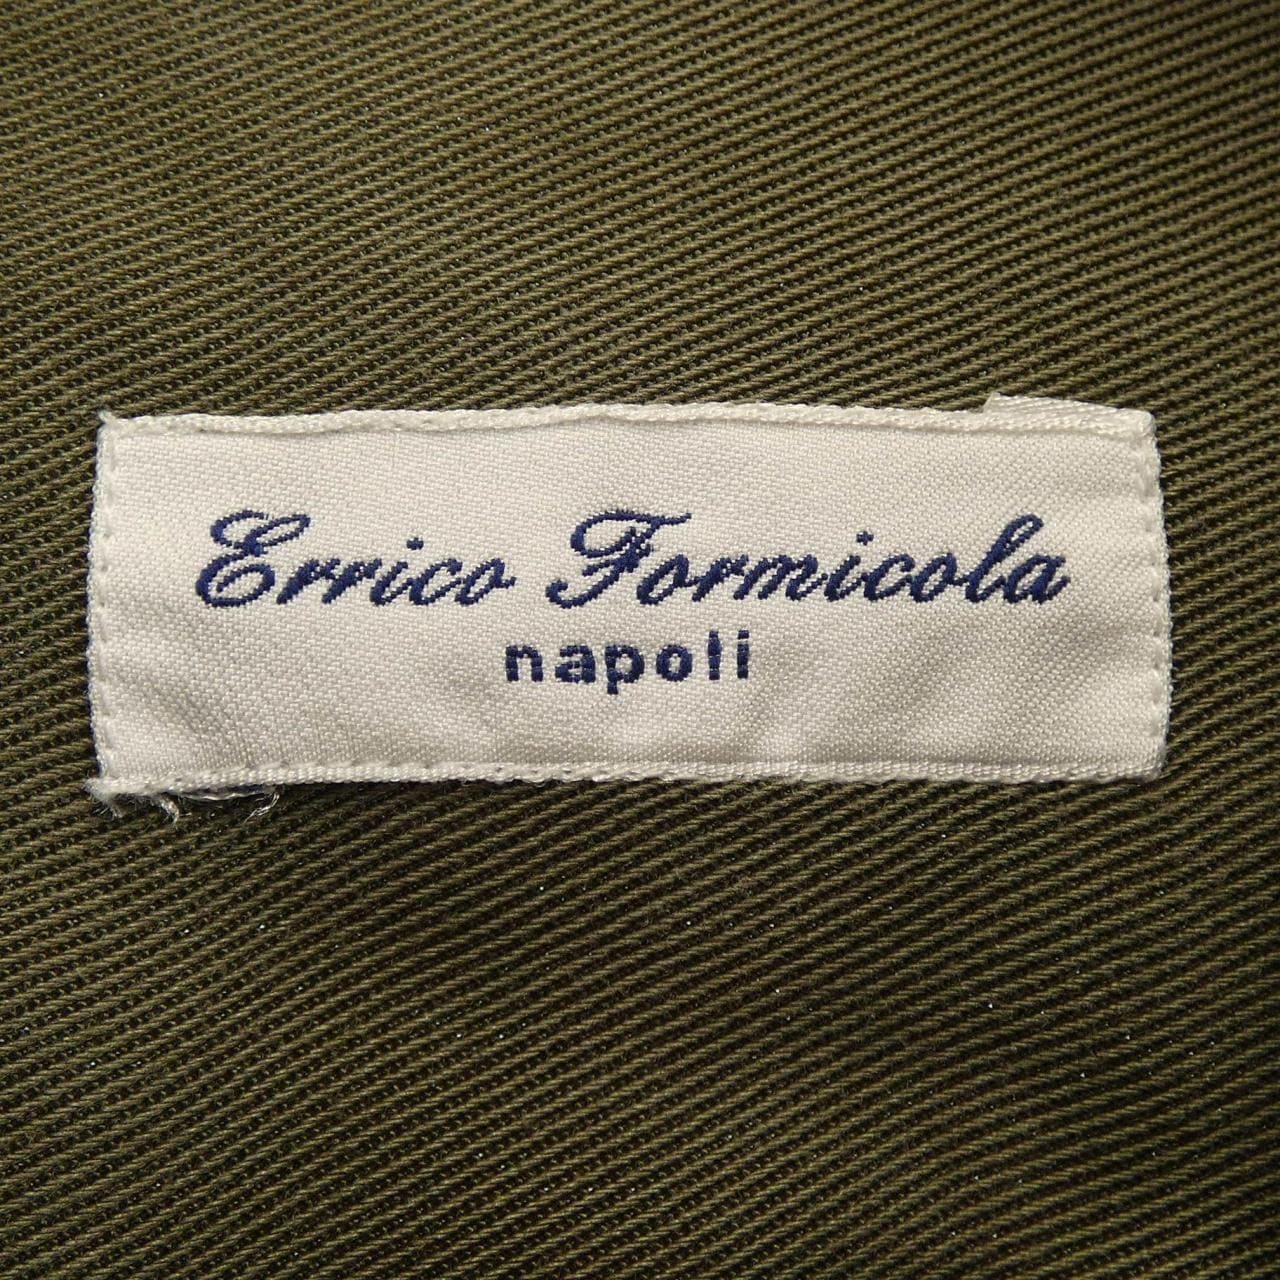 エリッコフォルミコラ ERRICO FORMICOLA シャツ